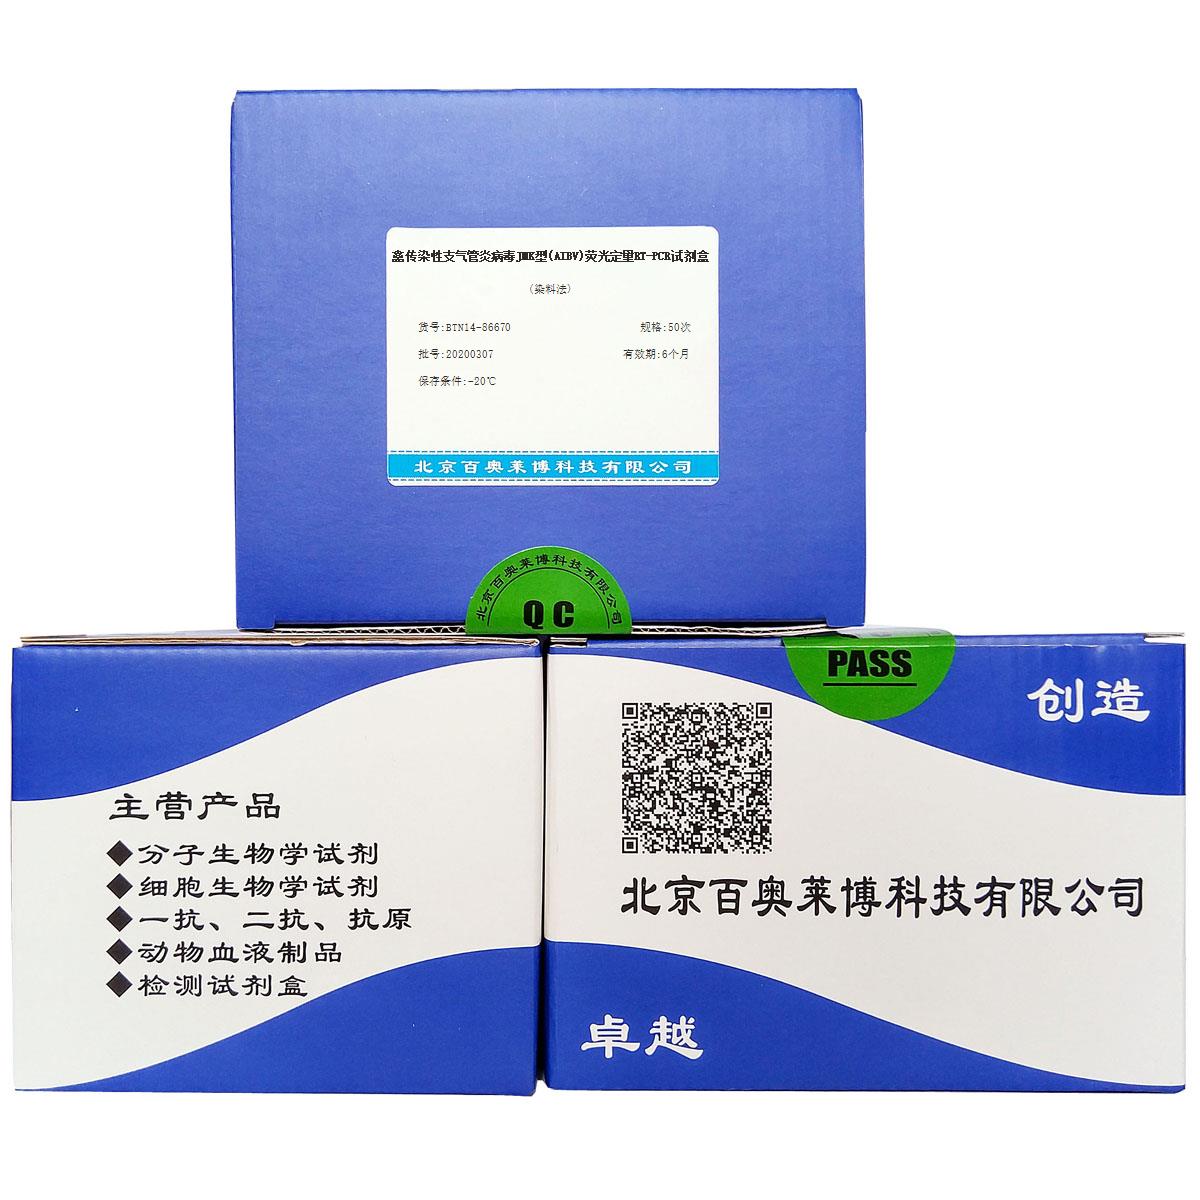 禽传染性支气管炎病毒JMK型(AIBV)荧光定量RT-PCR试剂盒(染料法)